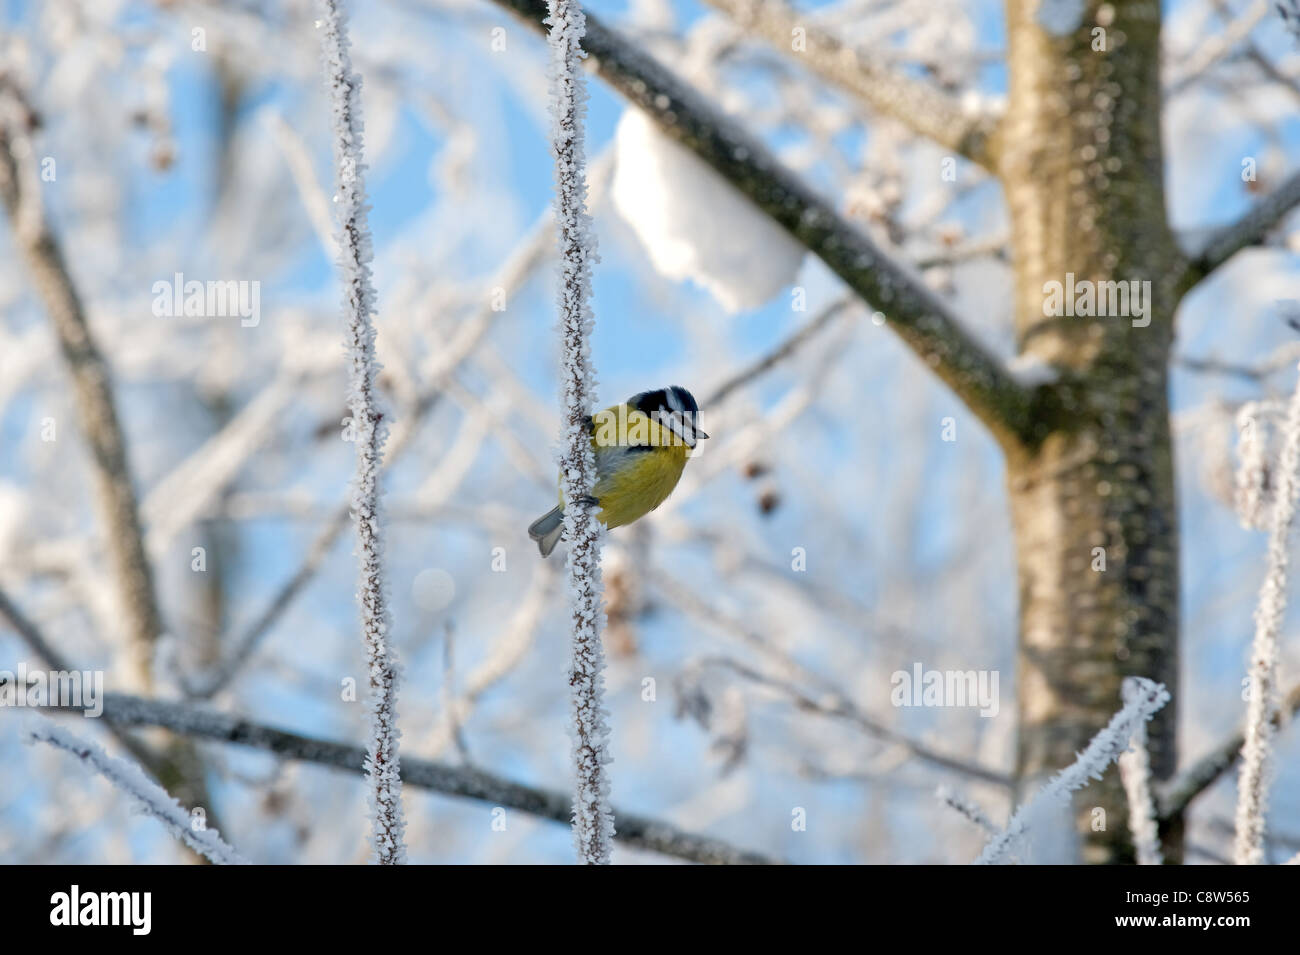 La cinciallegra ubicazione sul ramo albero in una fredda giornata invernale (Parus major) Foto Stock